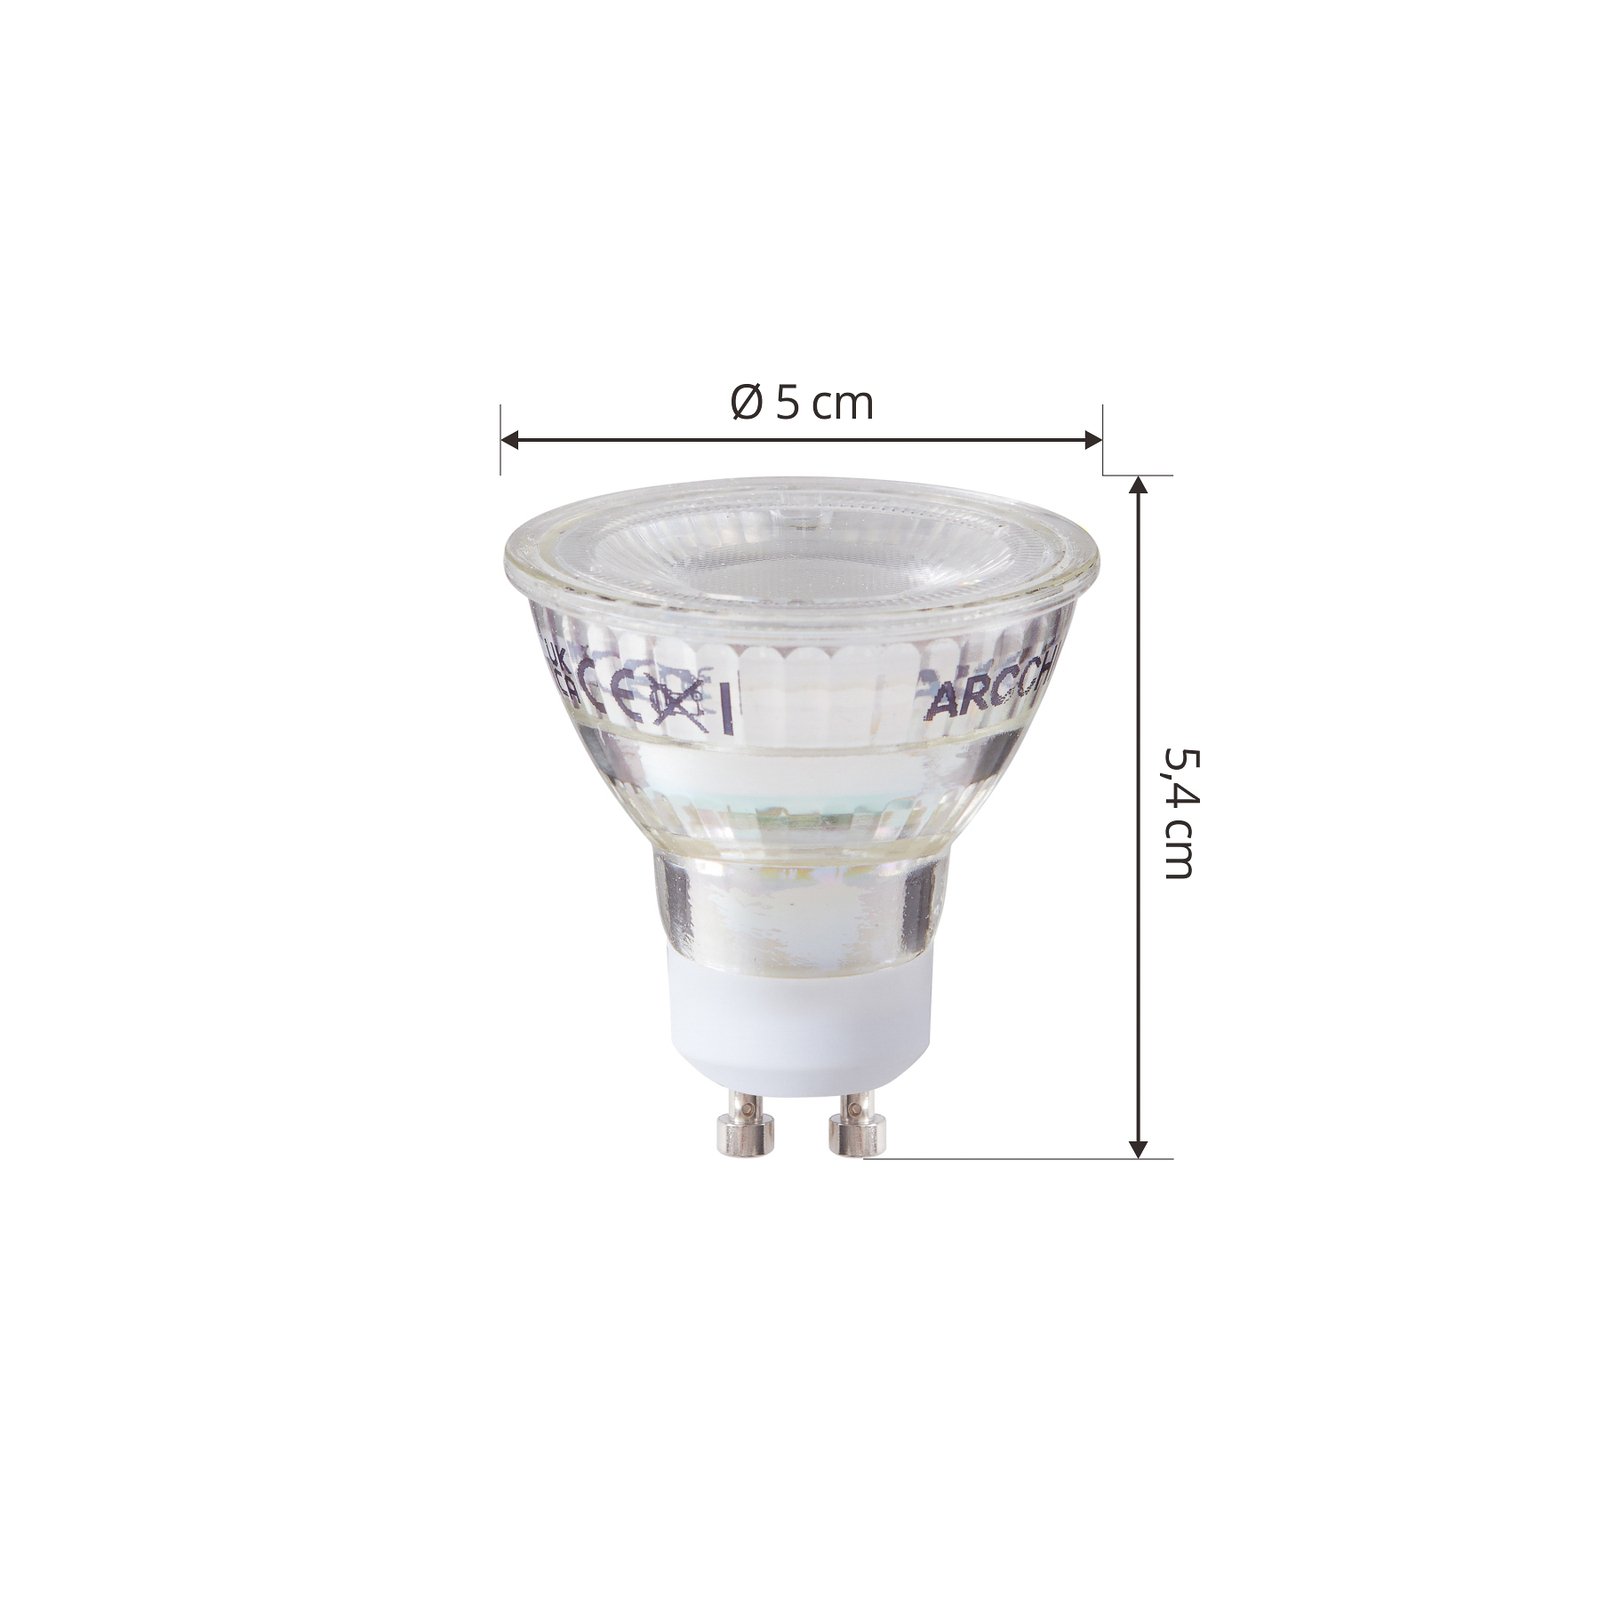 Arcchio LED-pære GU10 2,5W 6500K 450lm glas sæt med 5 stk